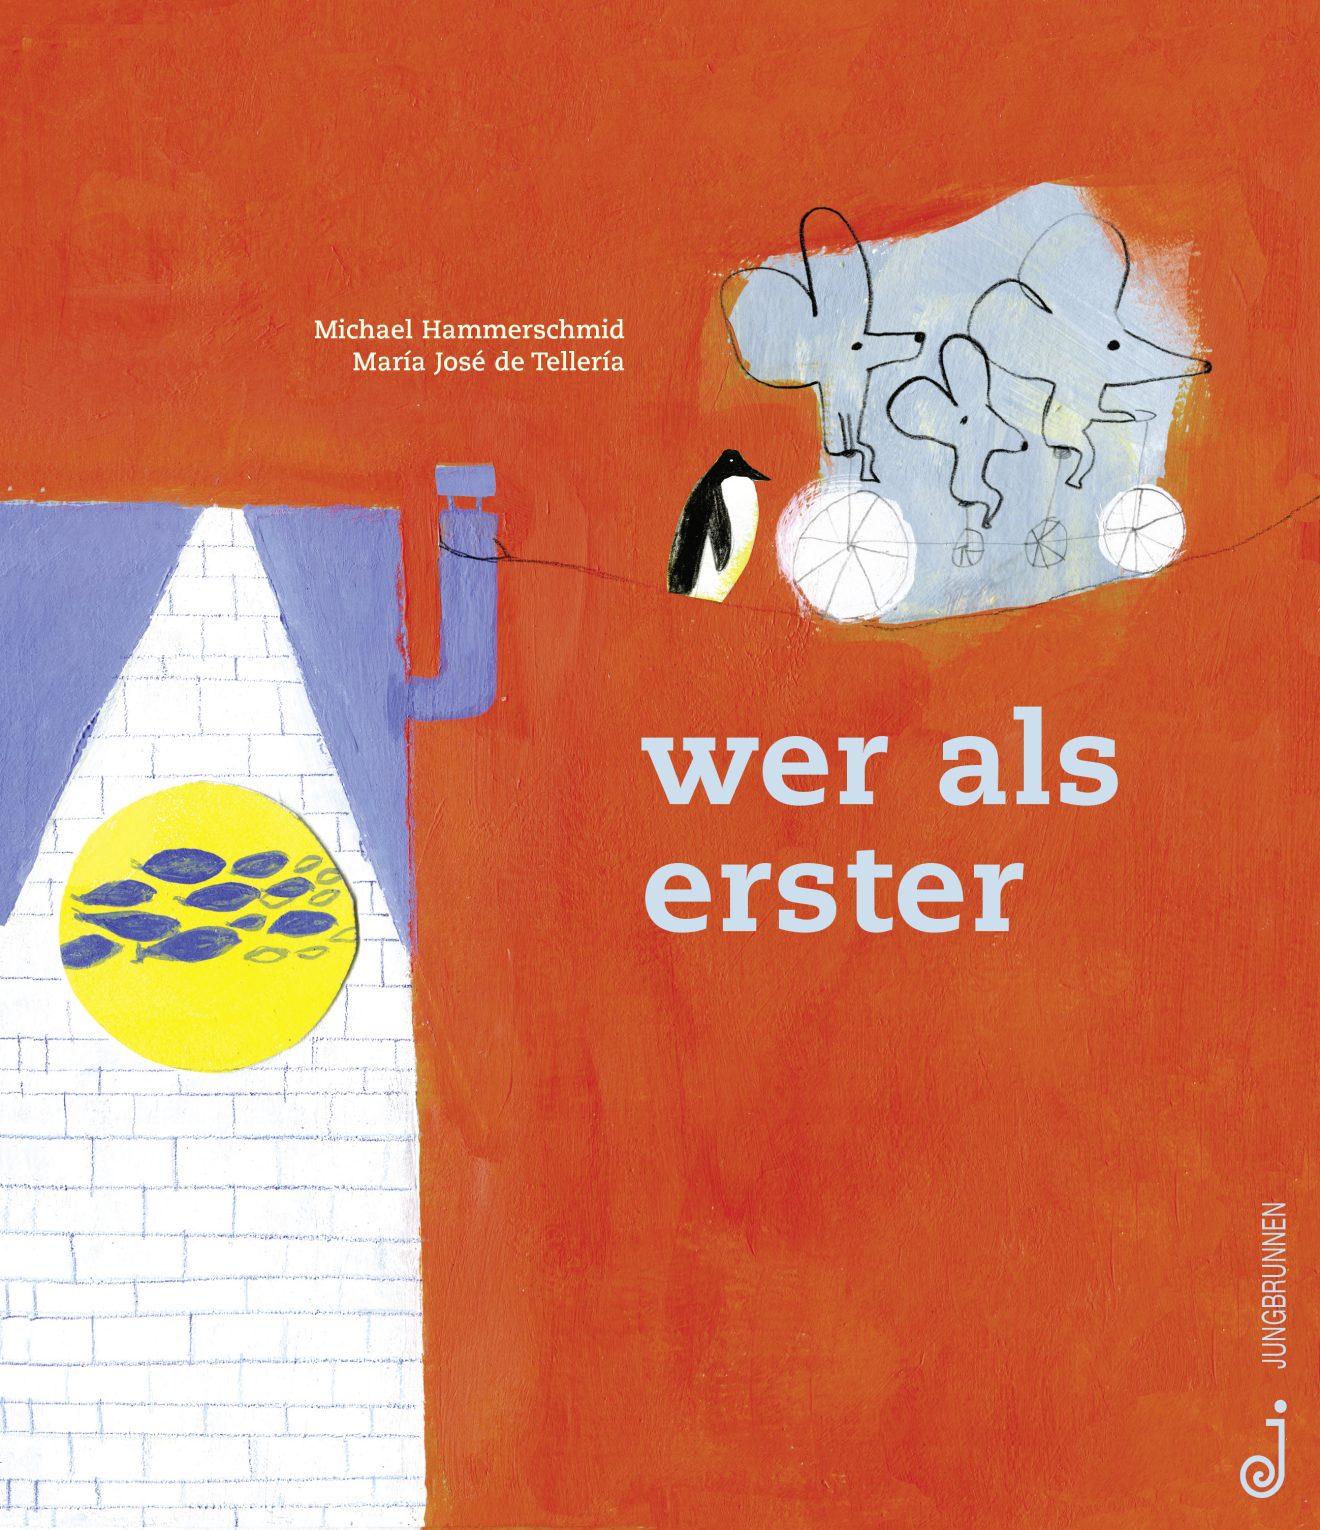 Cover von "wer als erster", Jungbrunnen Verlag